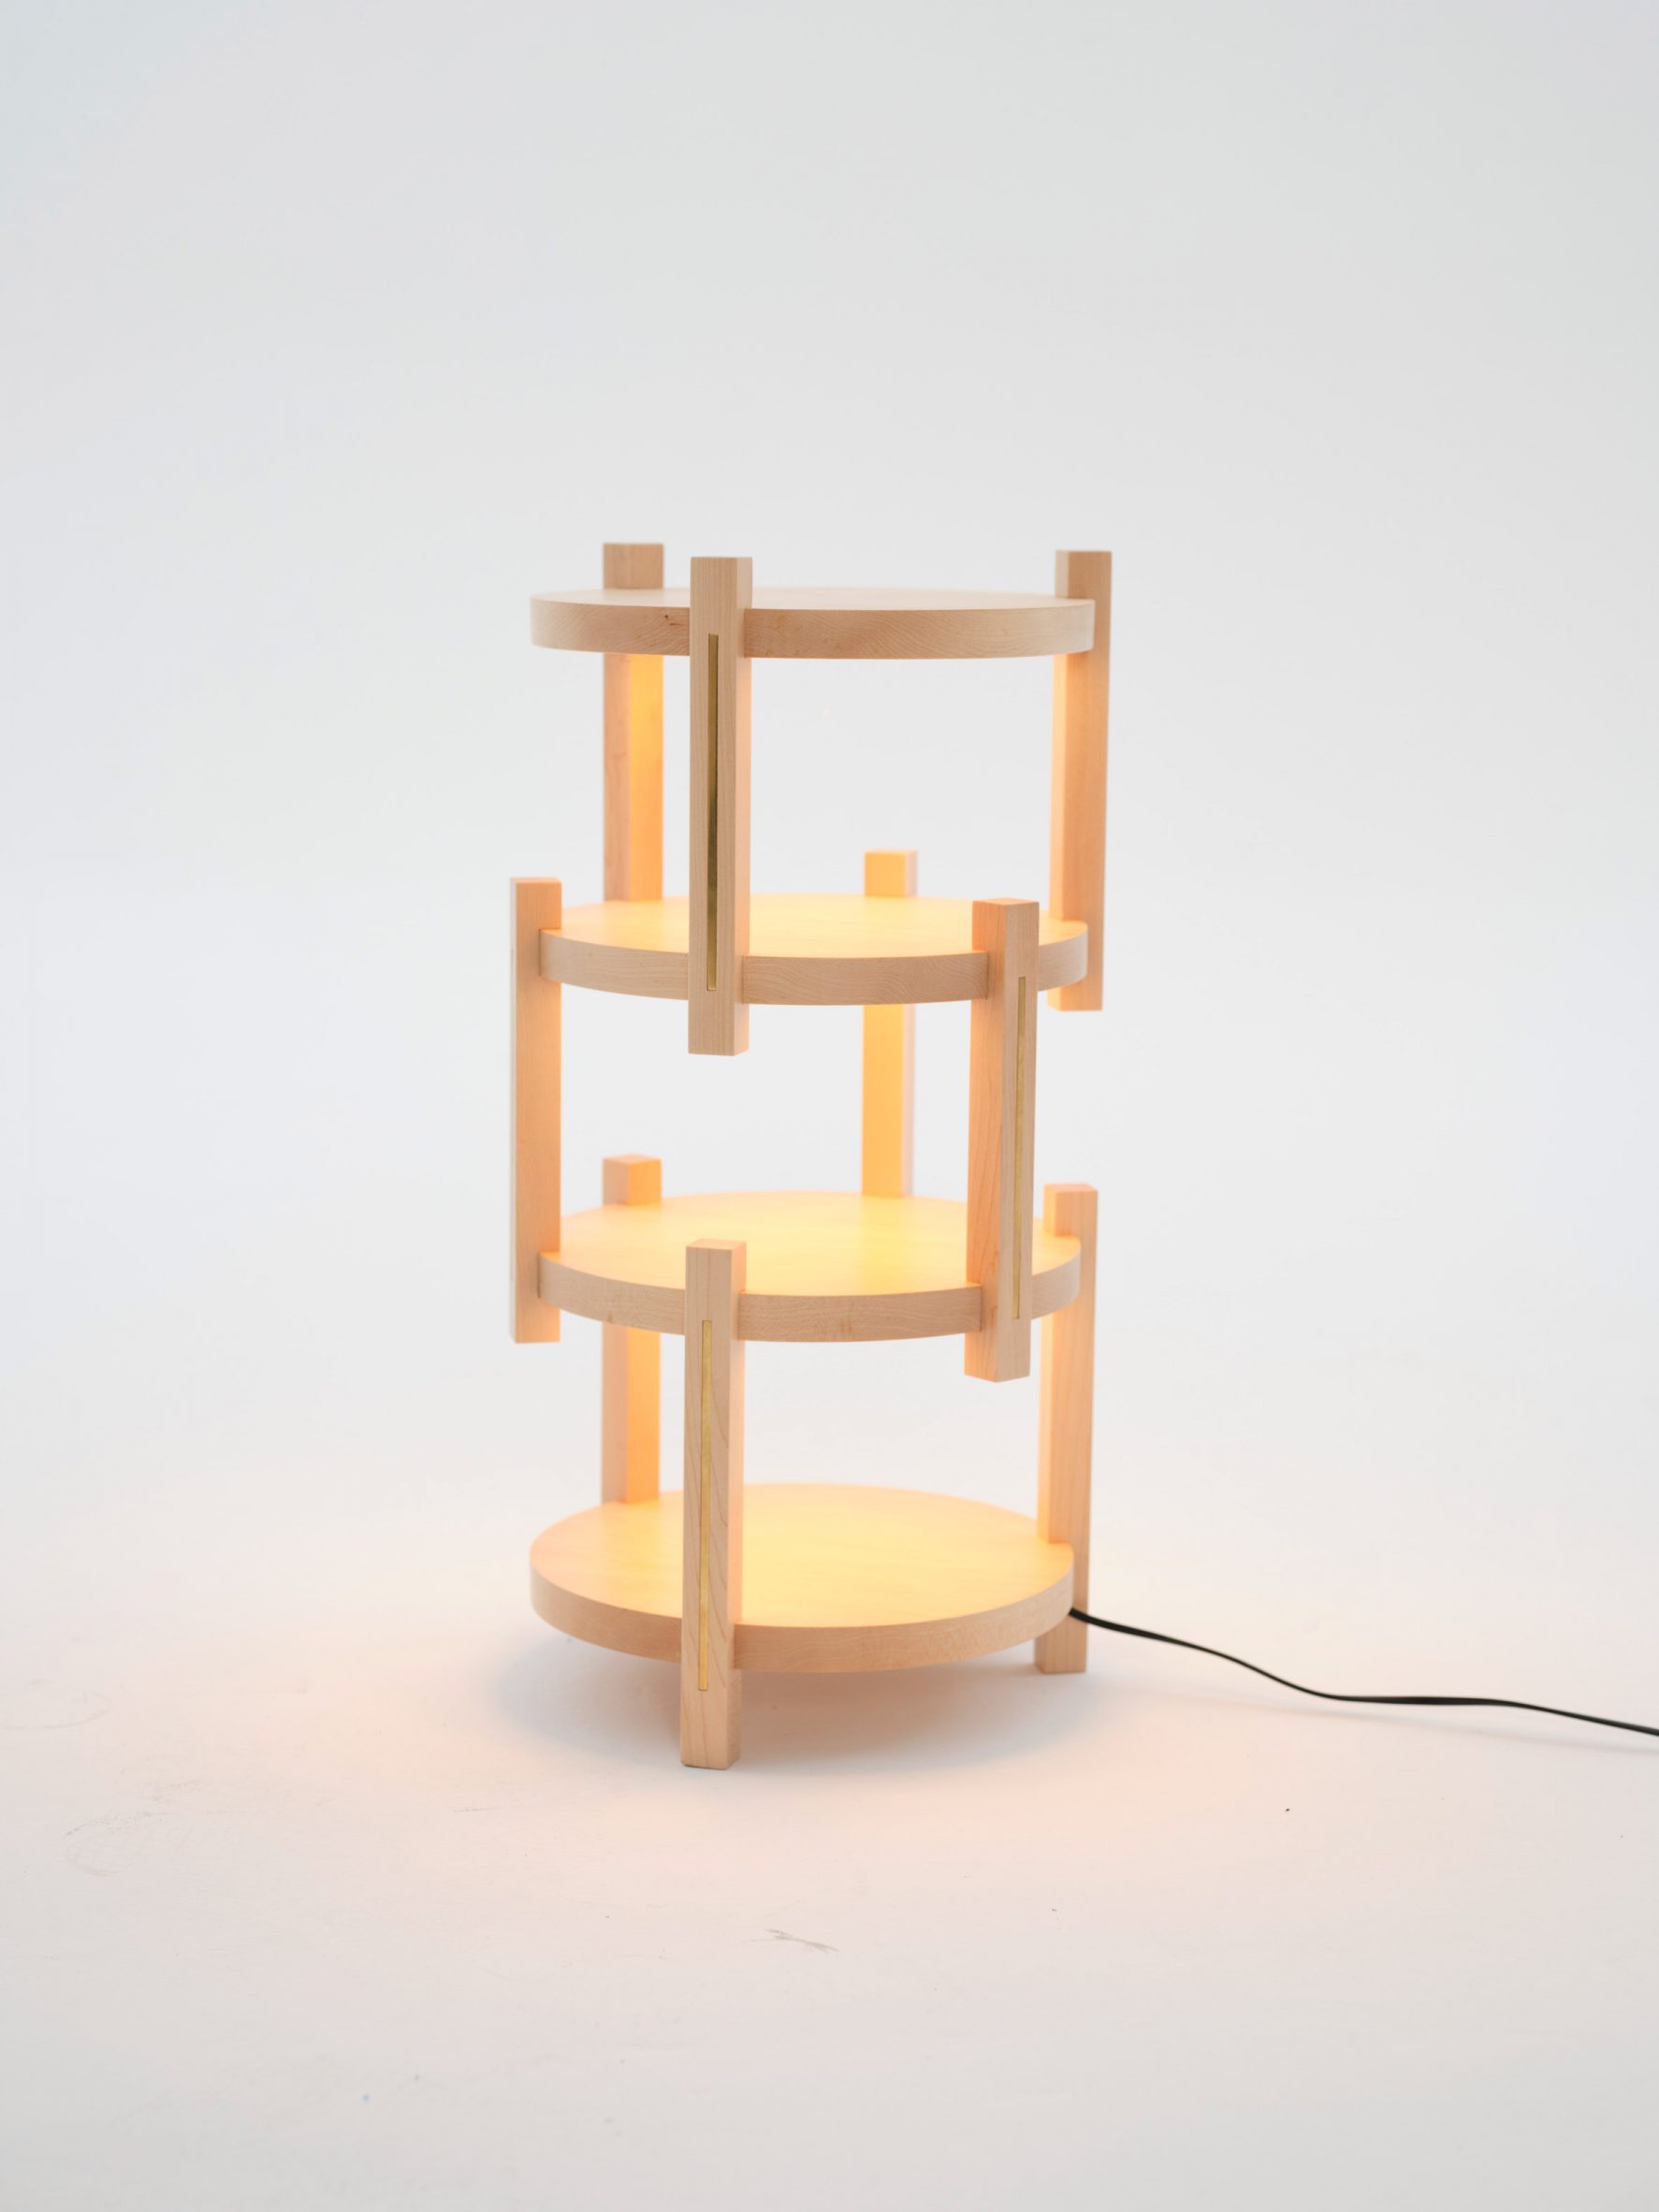 A wooden light